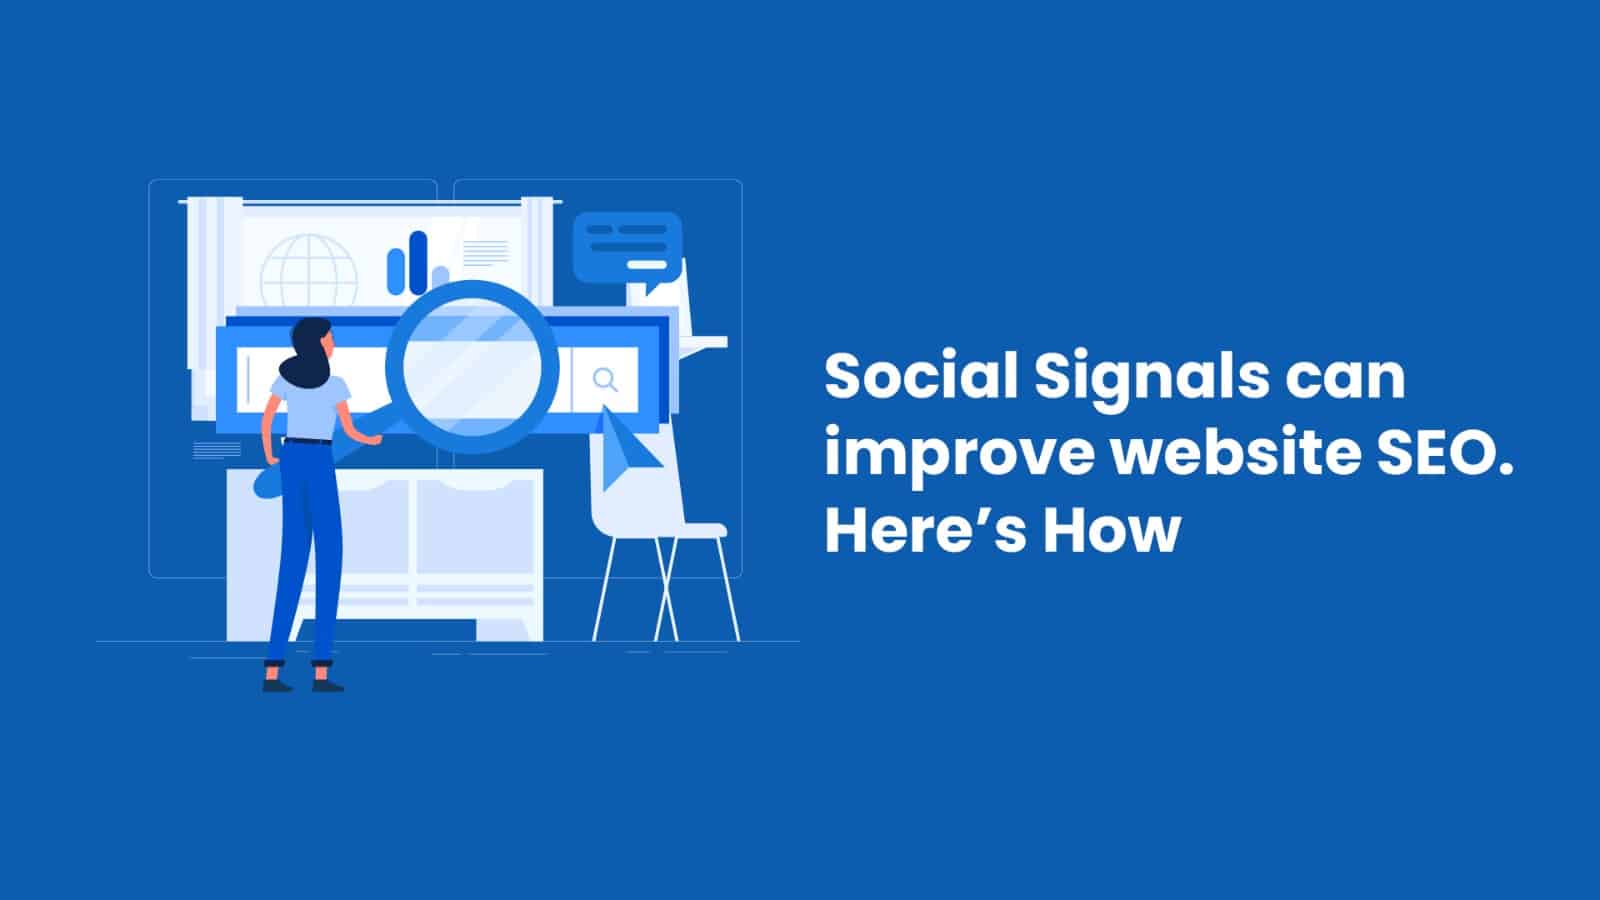 Social signals - The best SEO signals in social media.